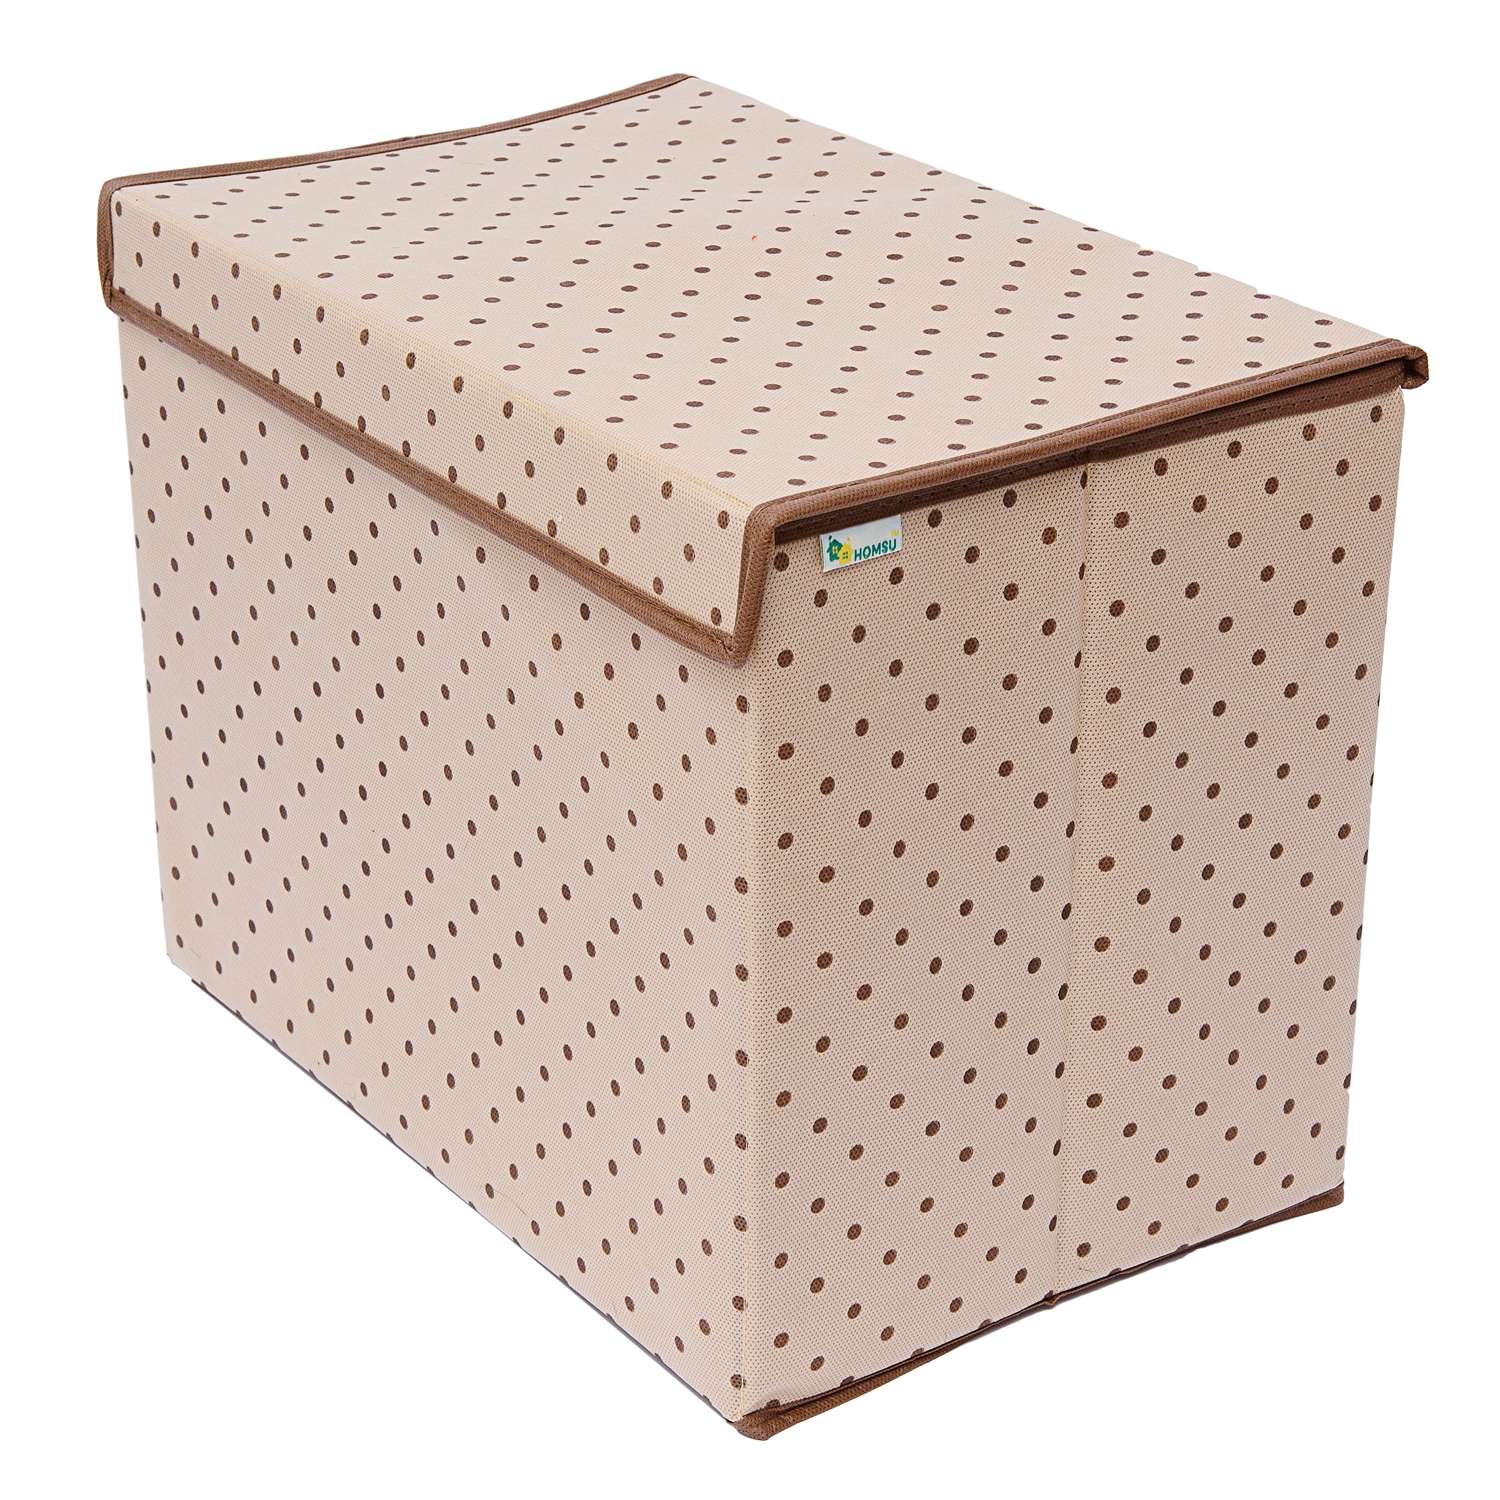 Коробка Homsu для хранения вещей с крышкой 38х25х30 см - фото 1